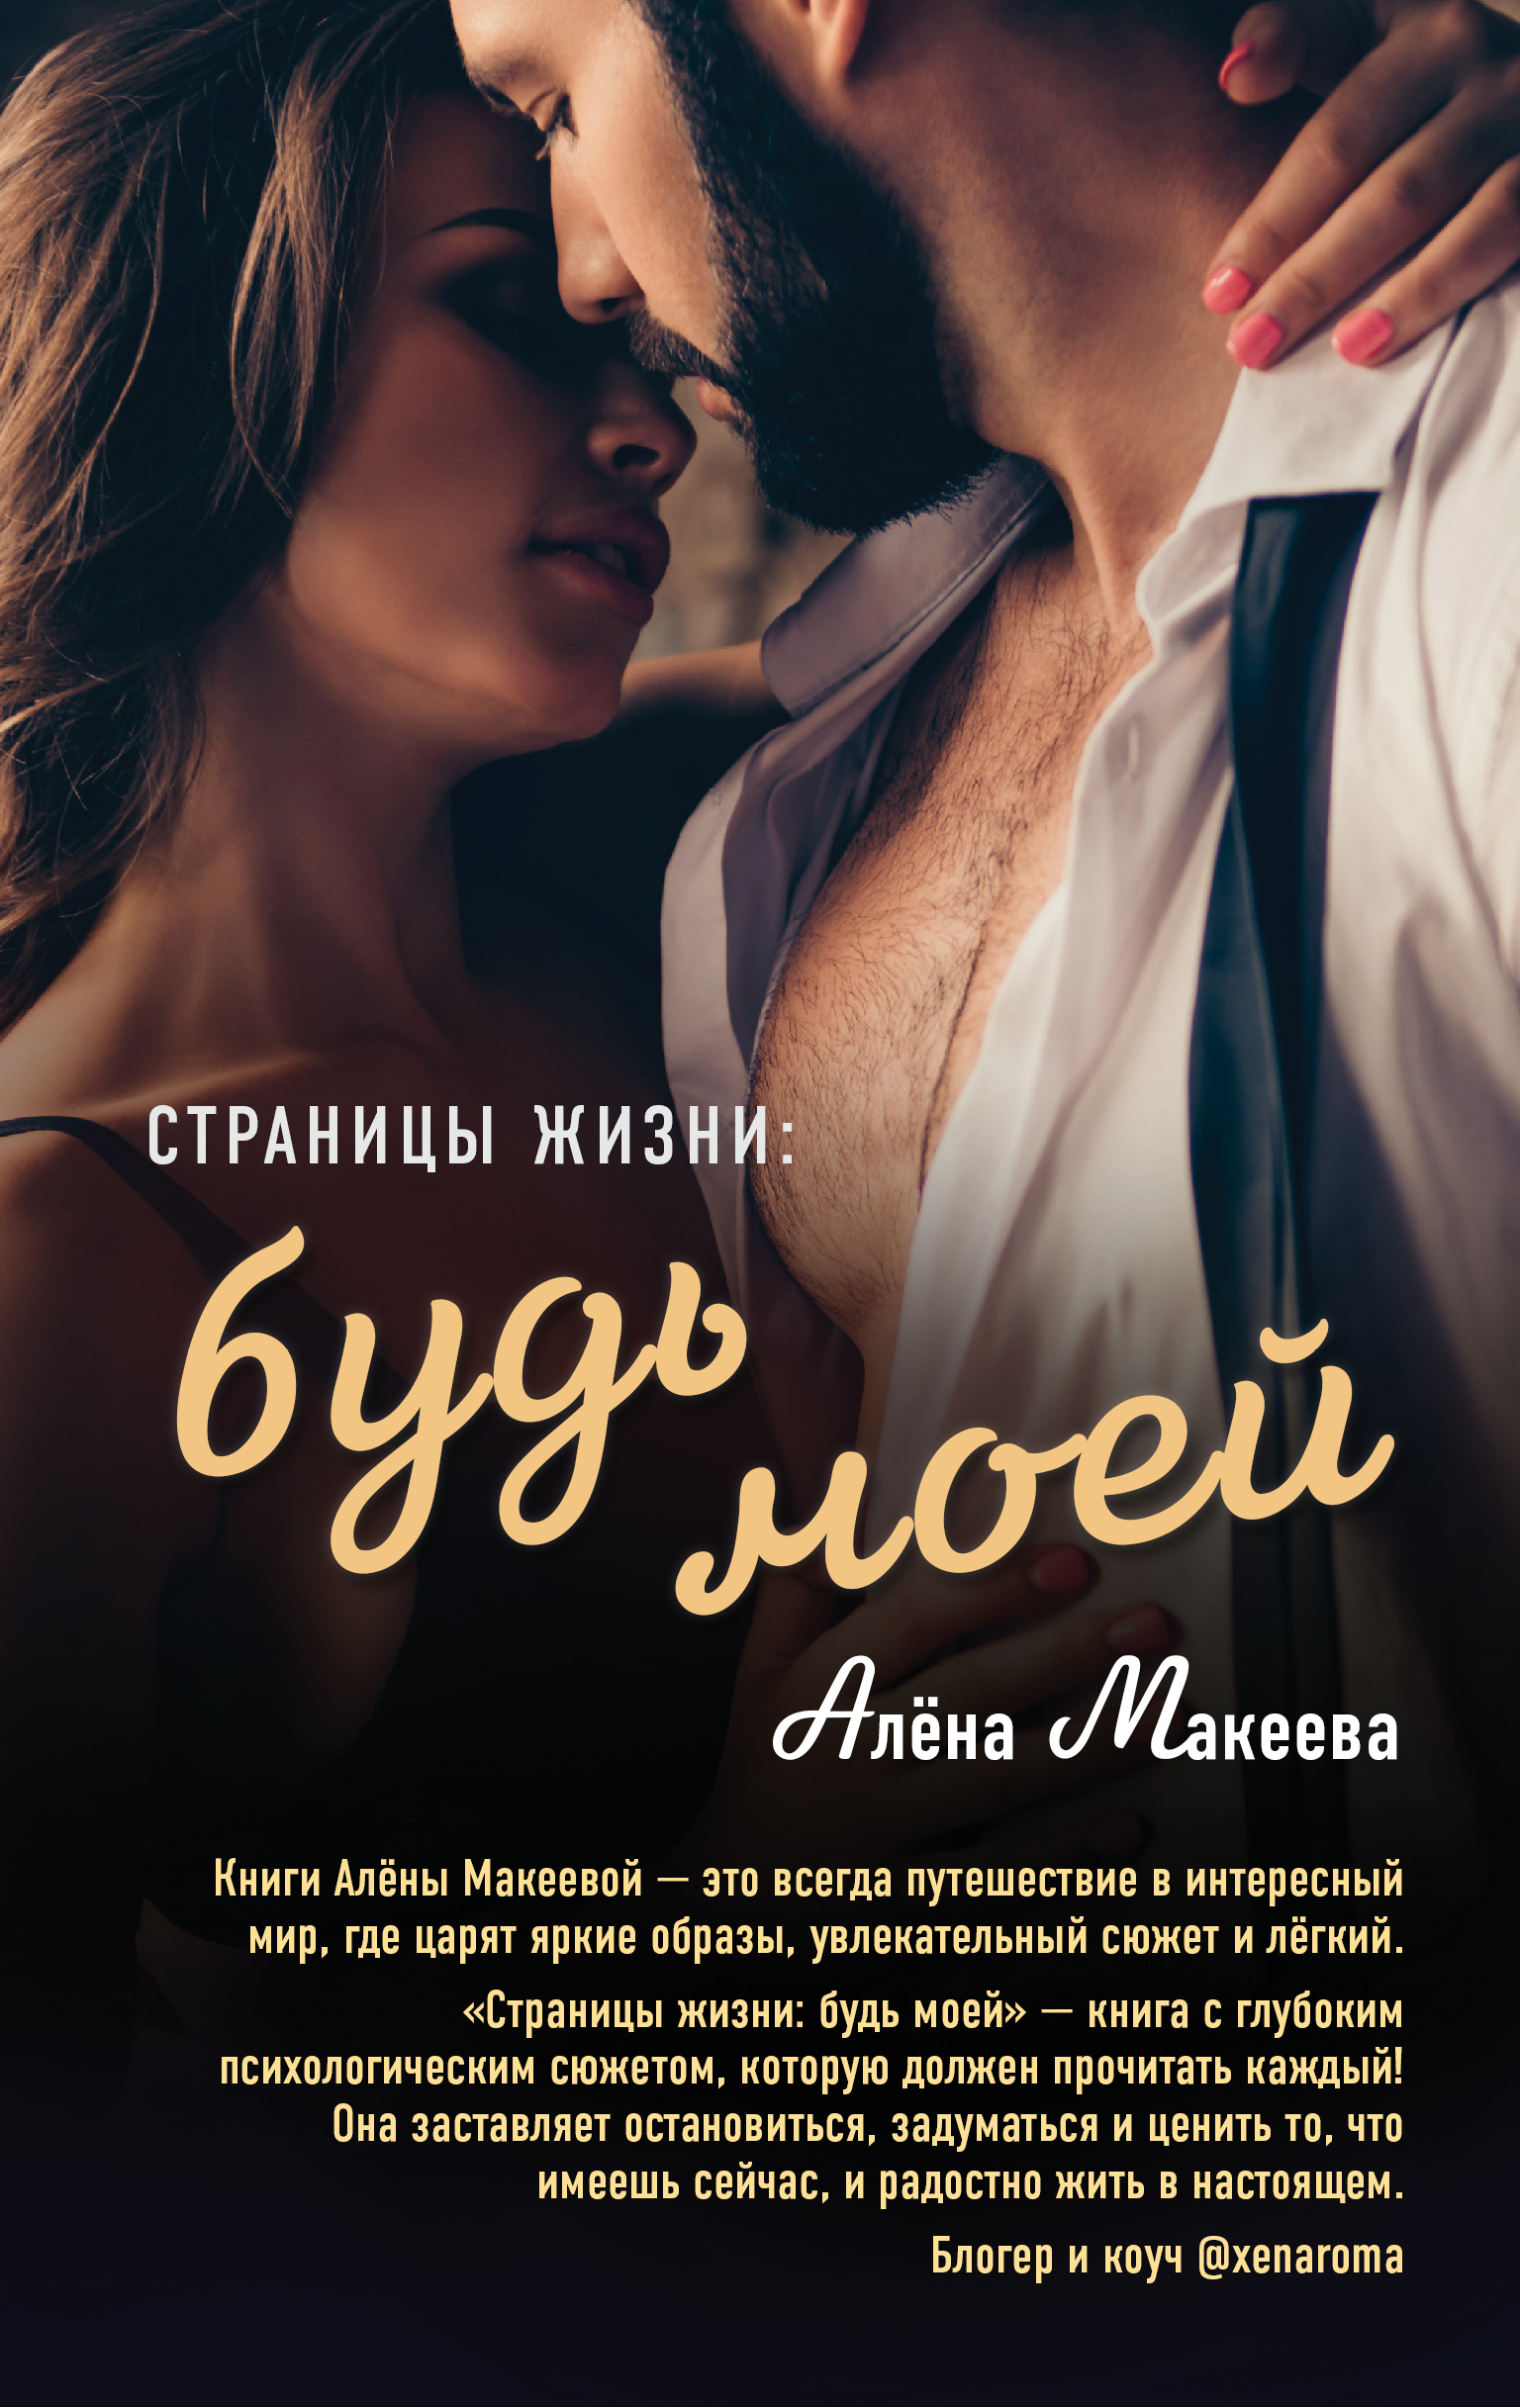 Страницы жизни: будь моей, Алёна Макеева – скачать книгу fb2, epub, pdf на  ЛитРес